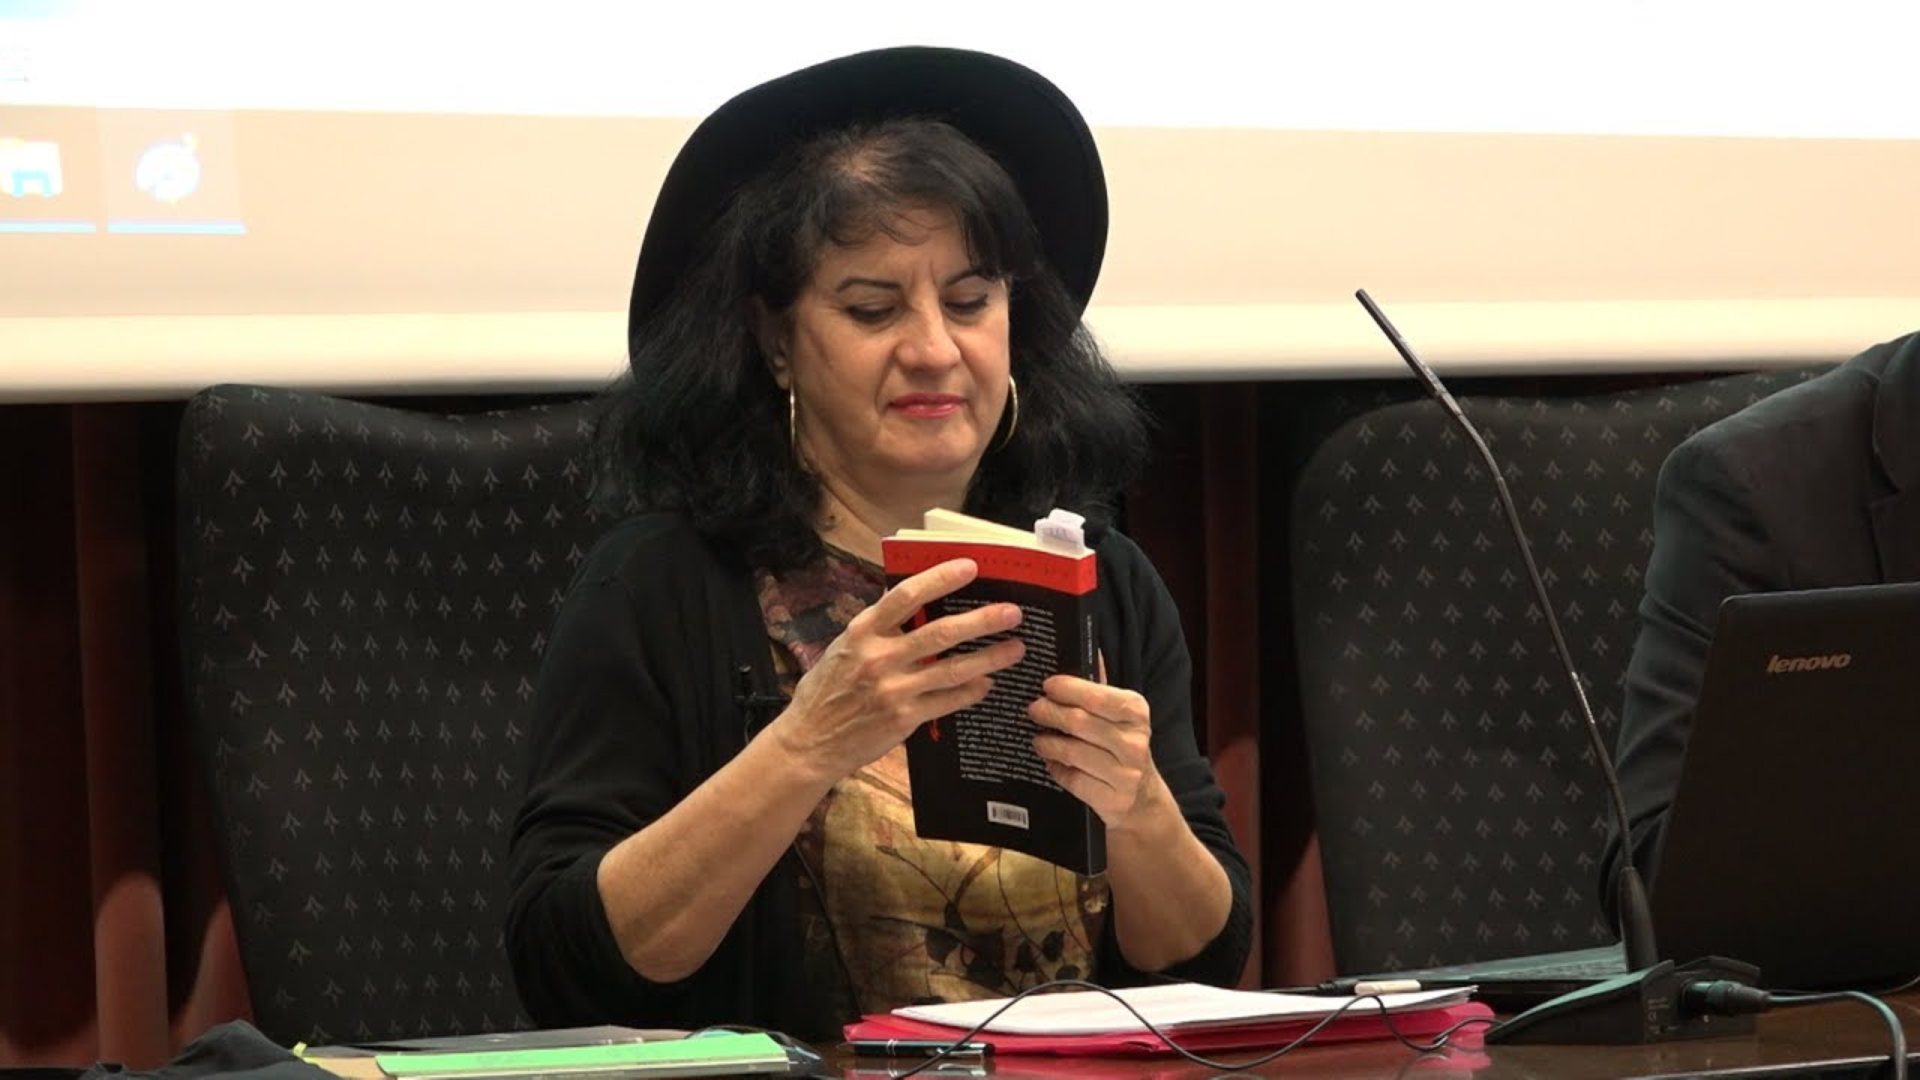 La poesía de Aurora Luque gana el reputado Premio Loewe por ‘Gavieras’